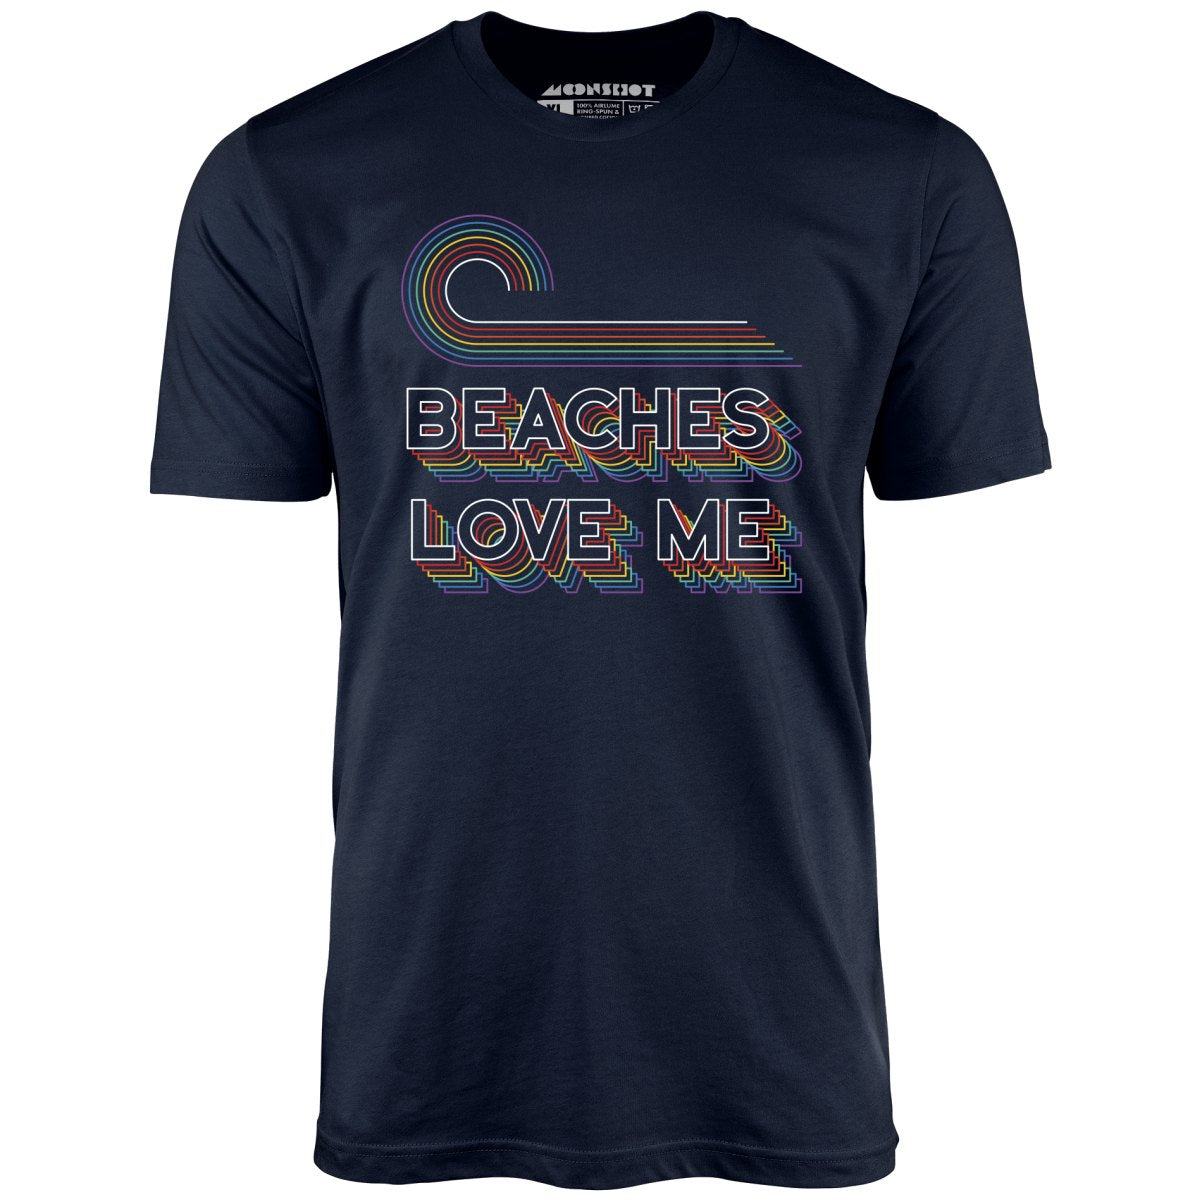 Beaches Love Me - Unisex T-Shirt